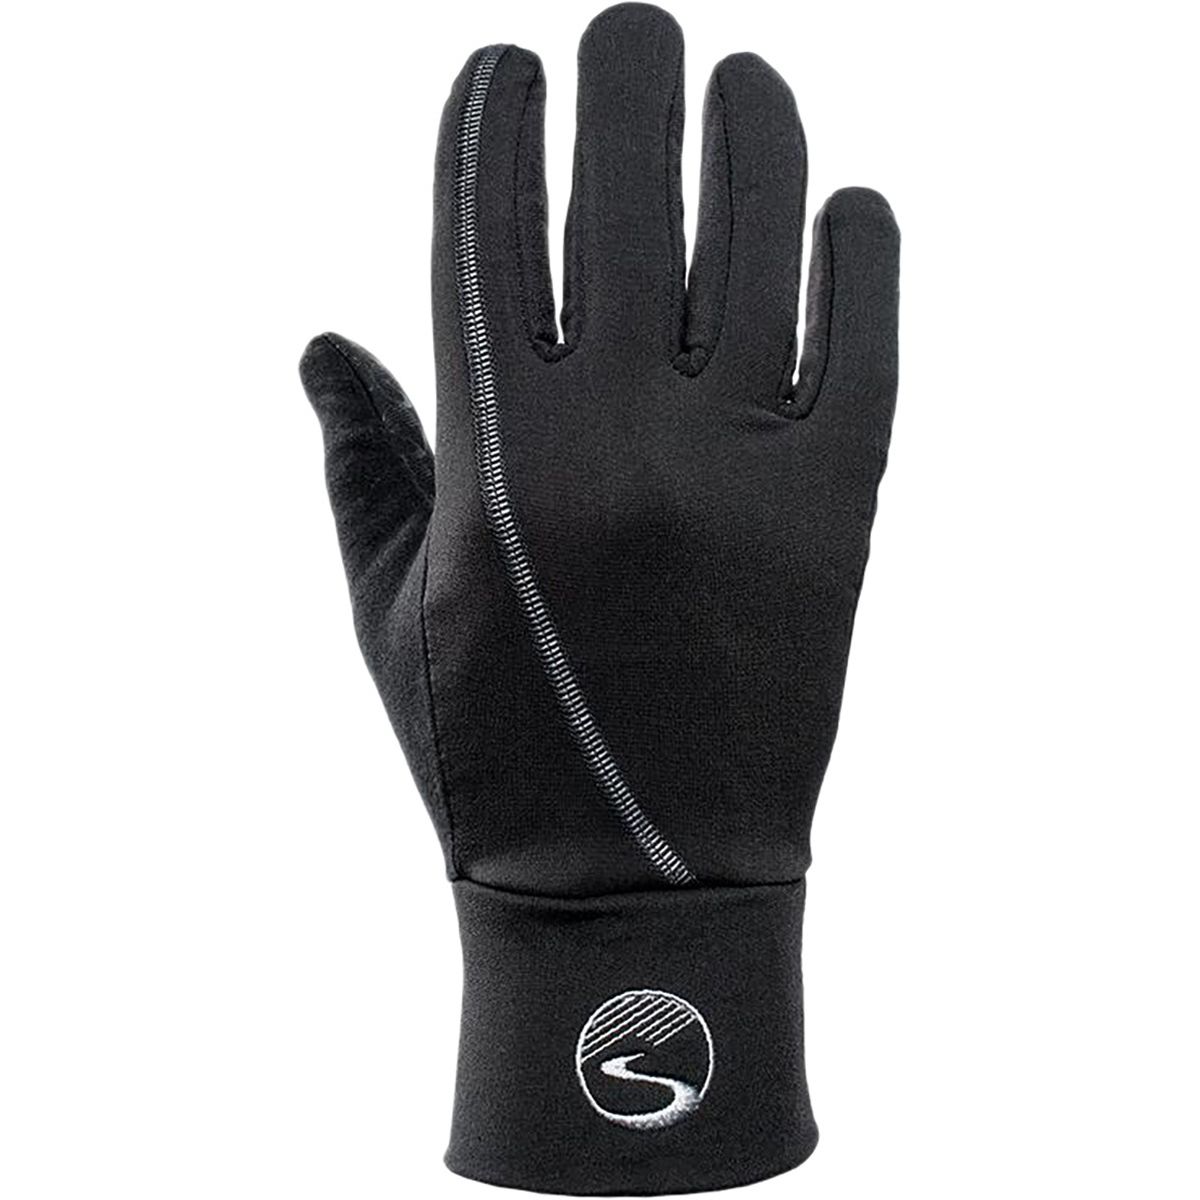 Showers Pass Crosspoint Liner Glove - Men's